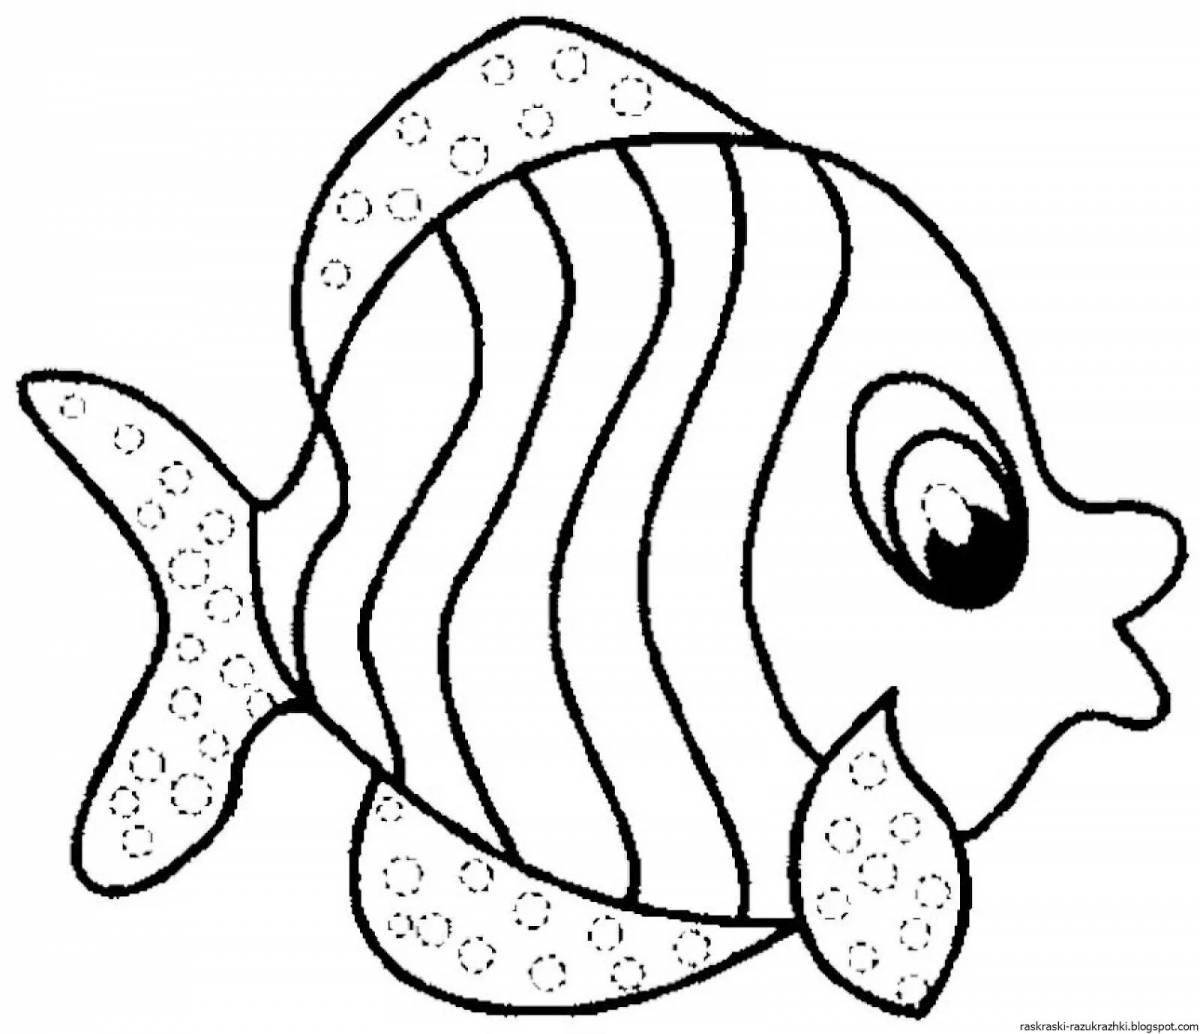 Раскраска игривая морская рыбка